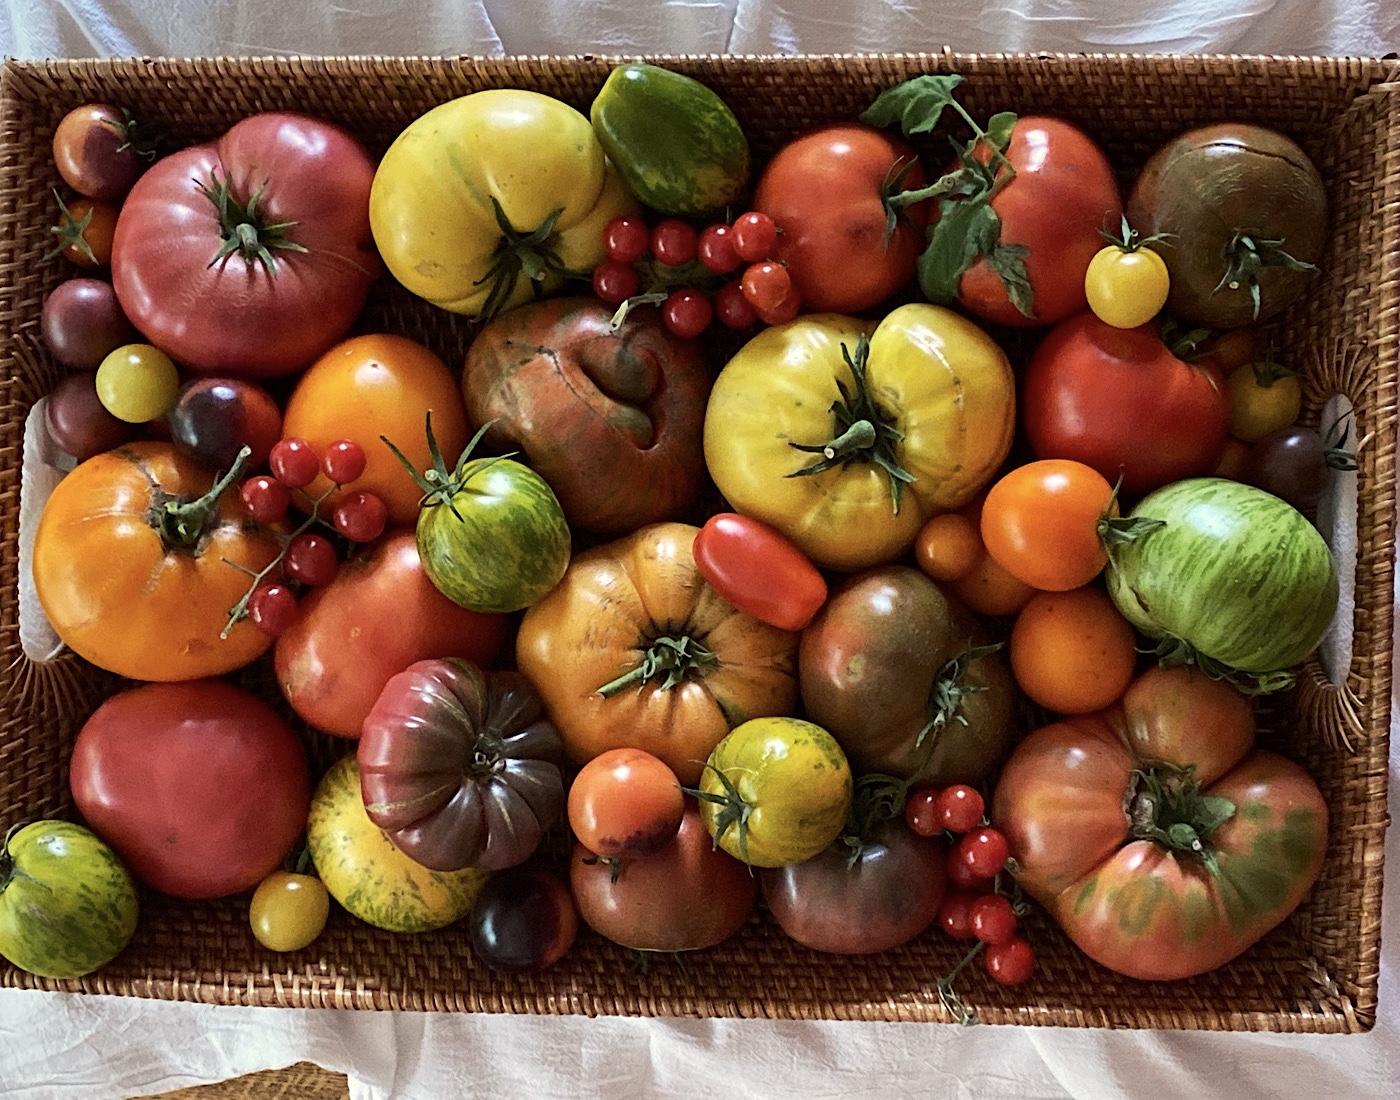 Mixed varieties of heirloom tomatoes on display.